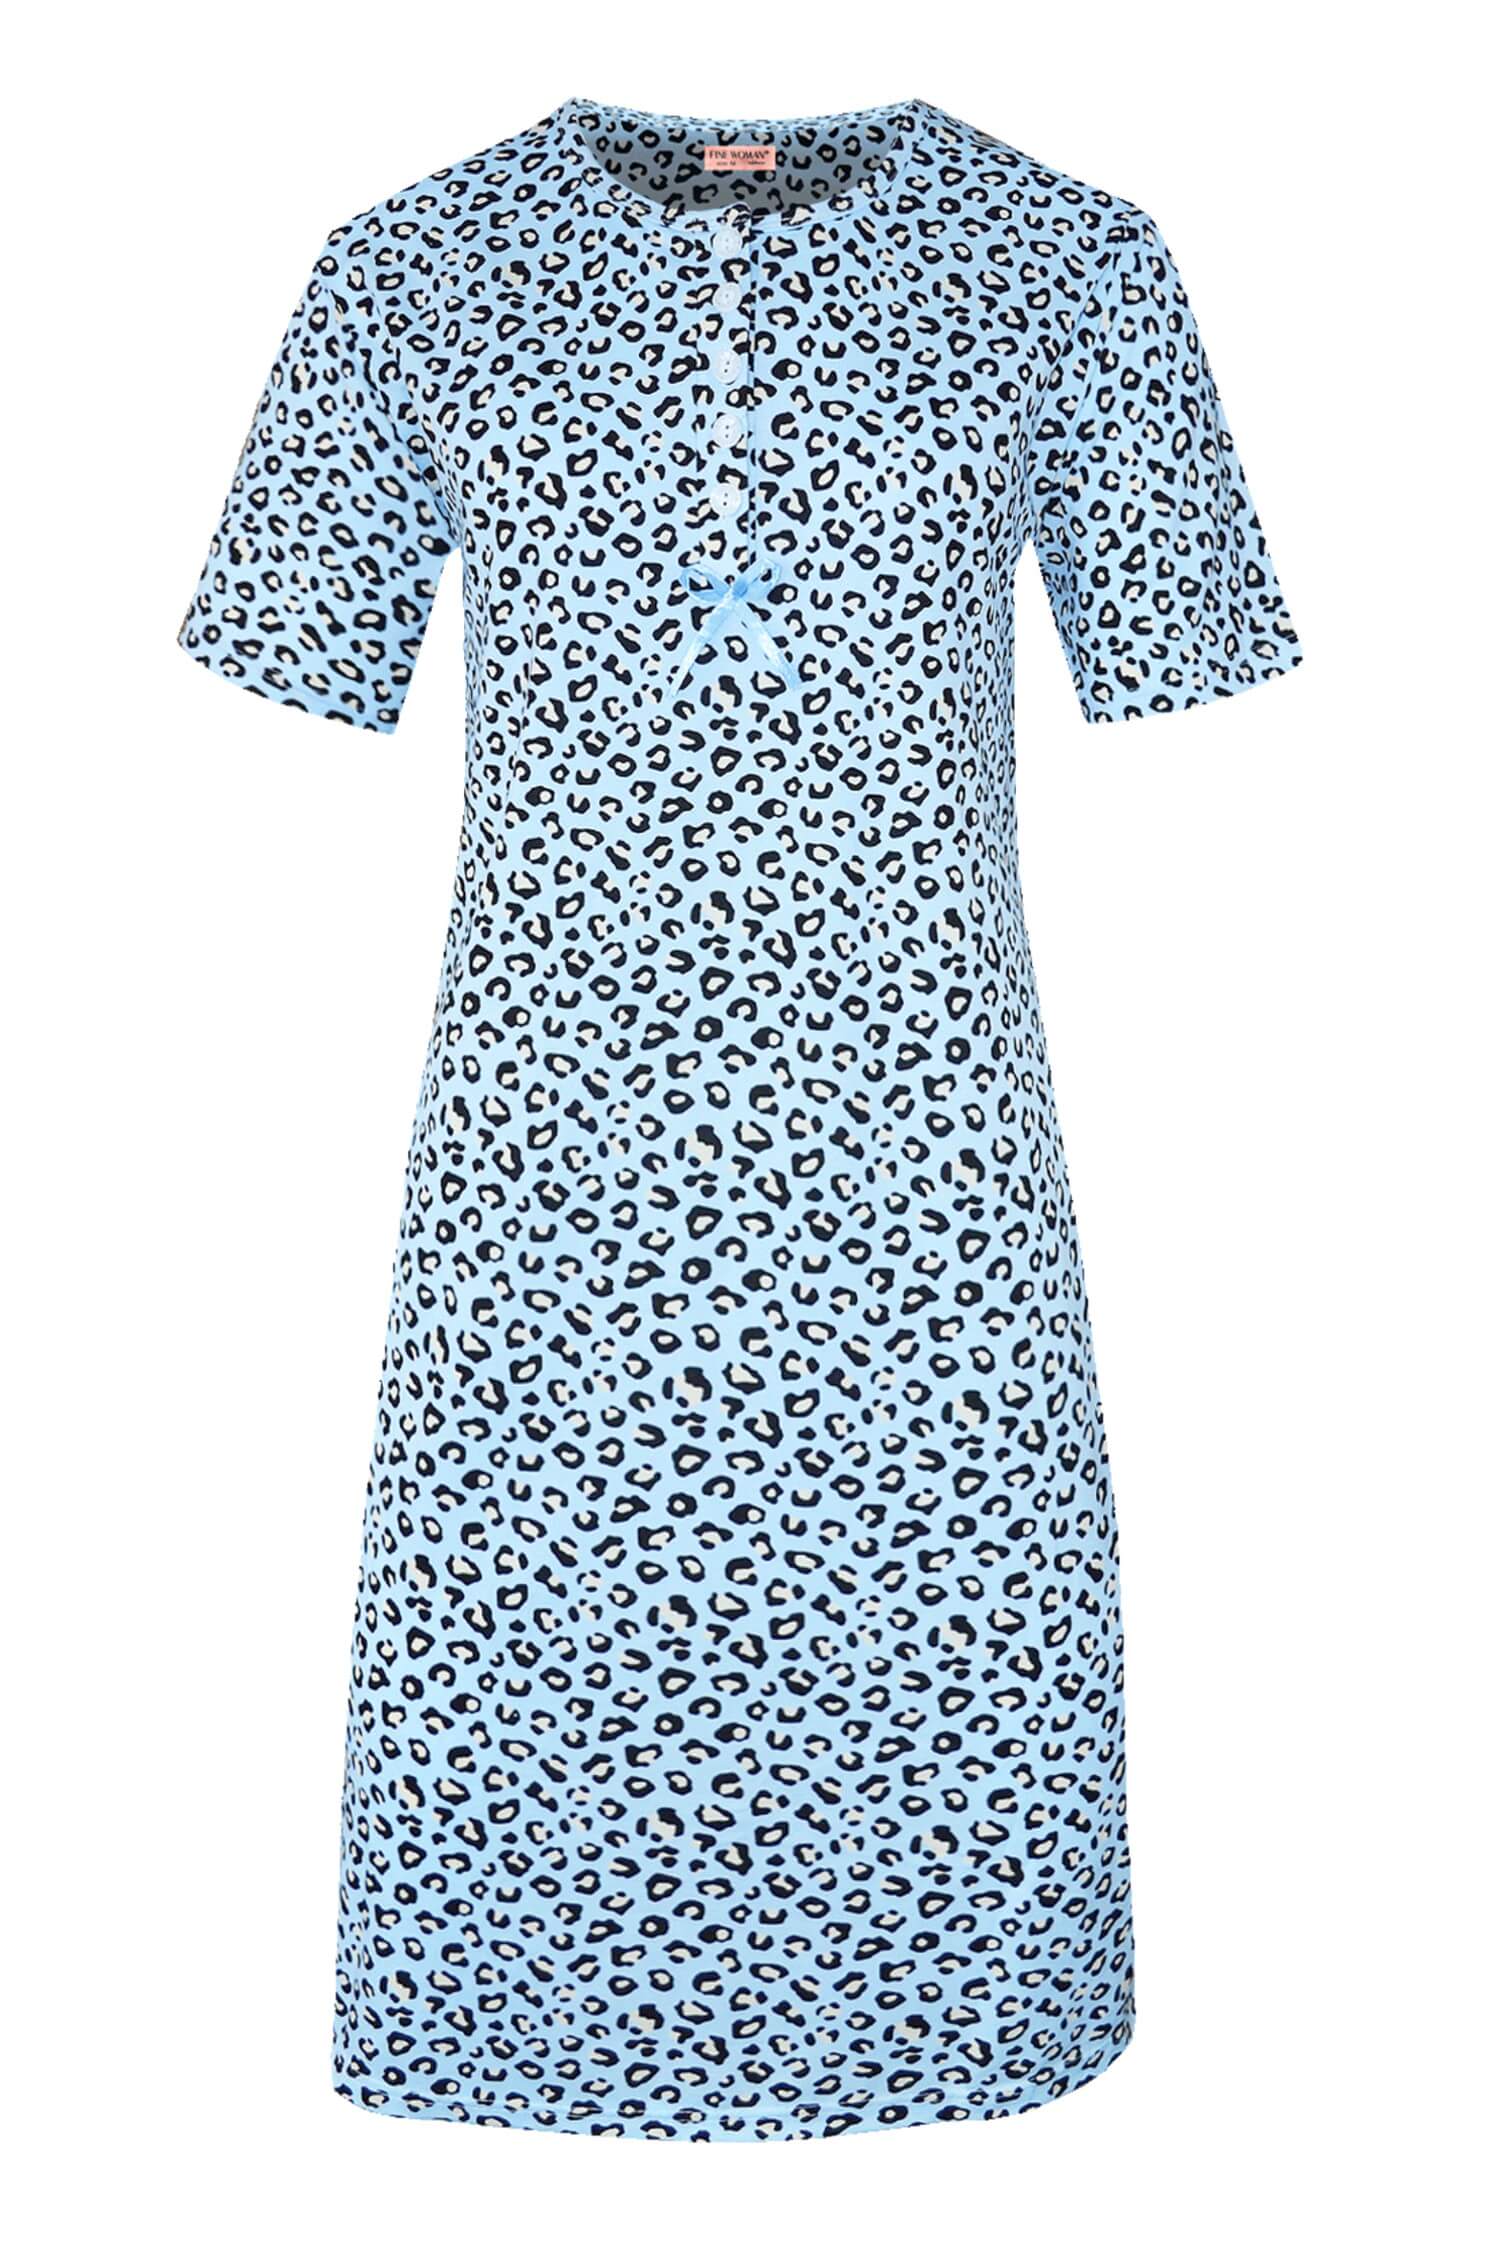 Katarina dámská noční košile leopardí vzor 6529 XXL světle modrá